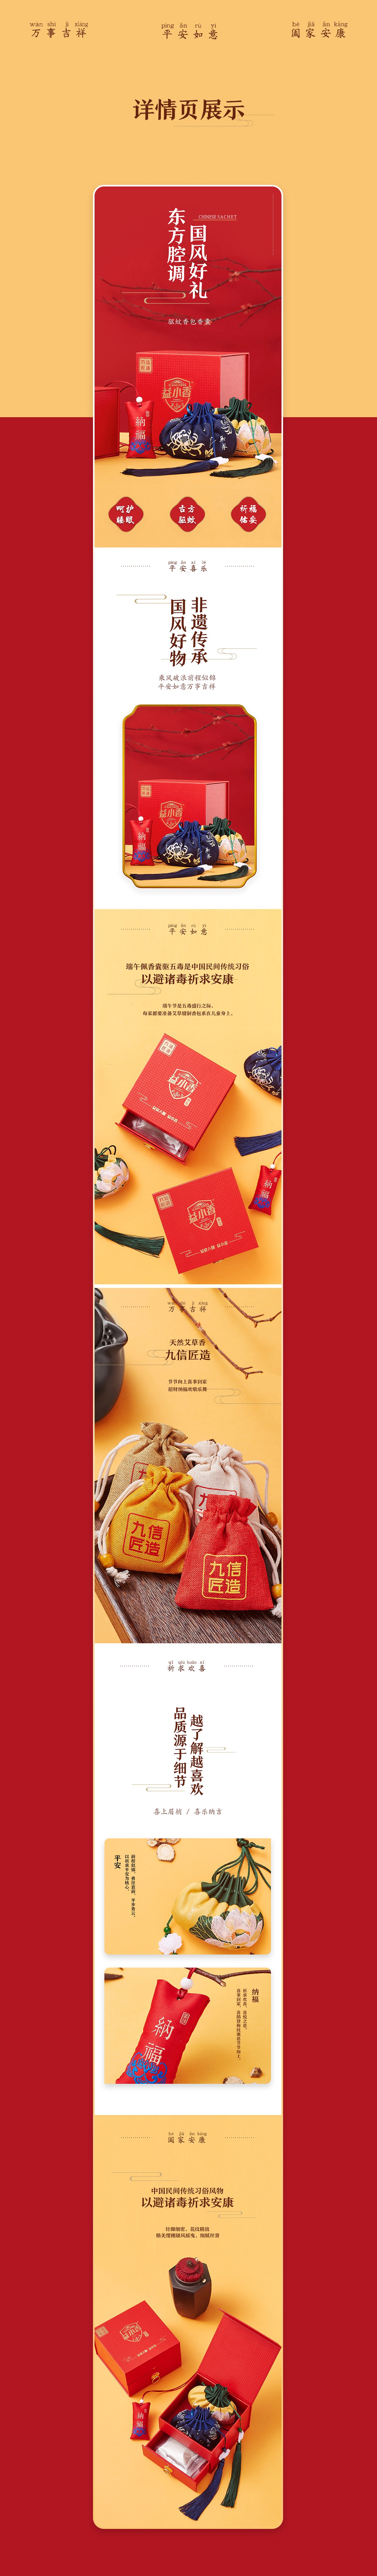 武汉电商设计|驱蚊香包详情设计|视觉优化|品牌策划